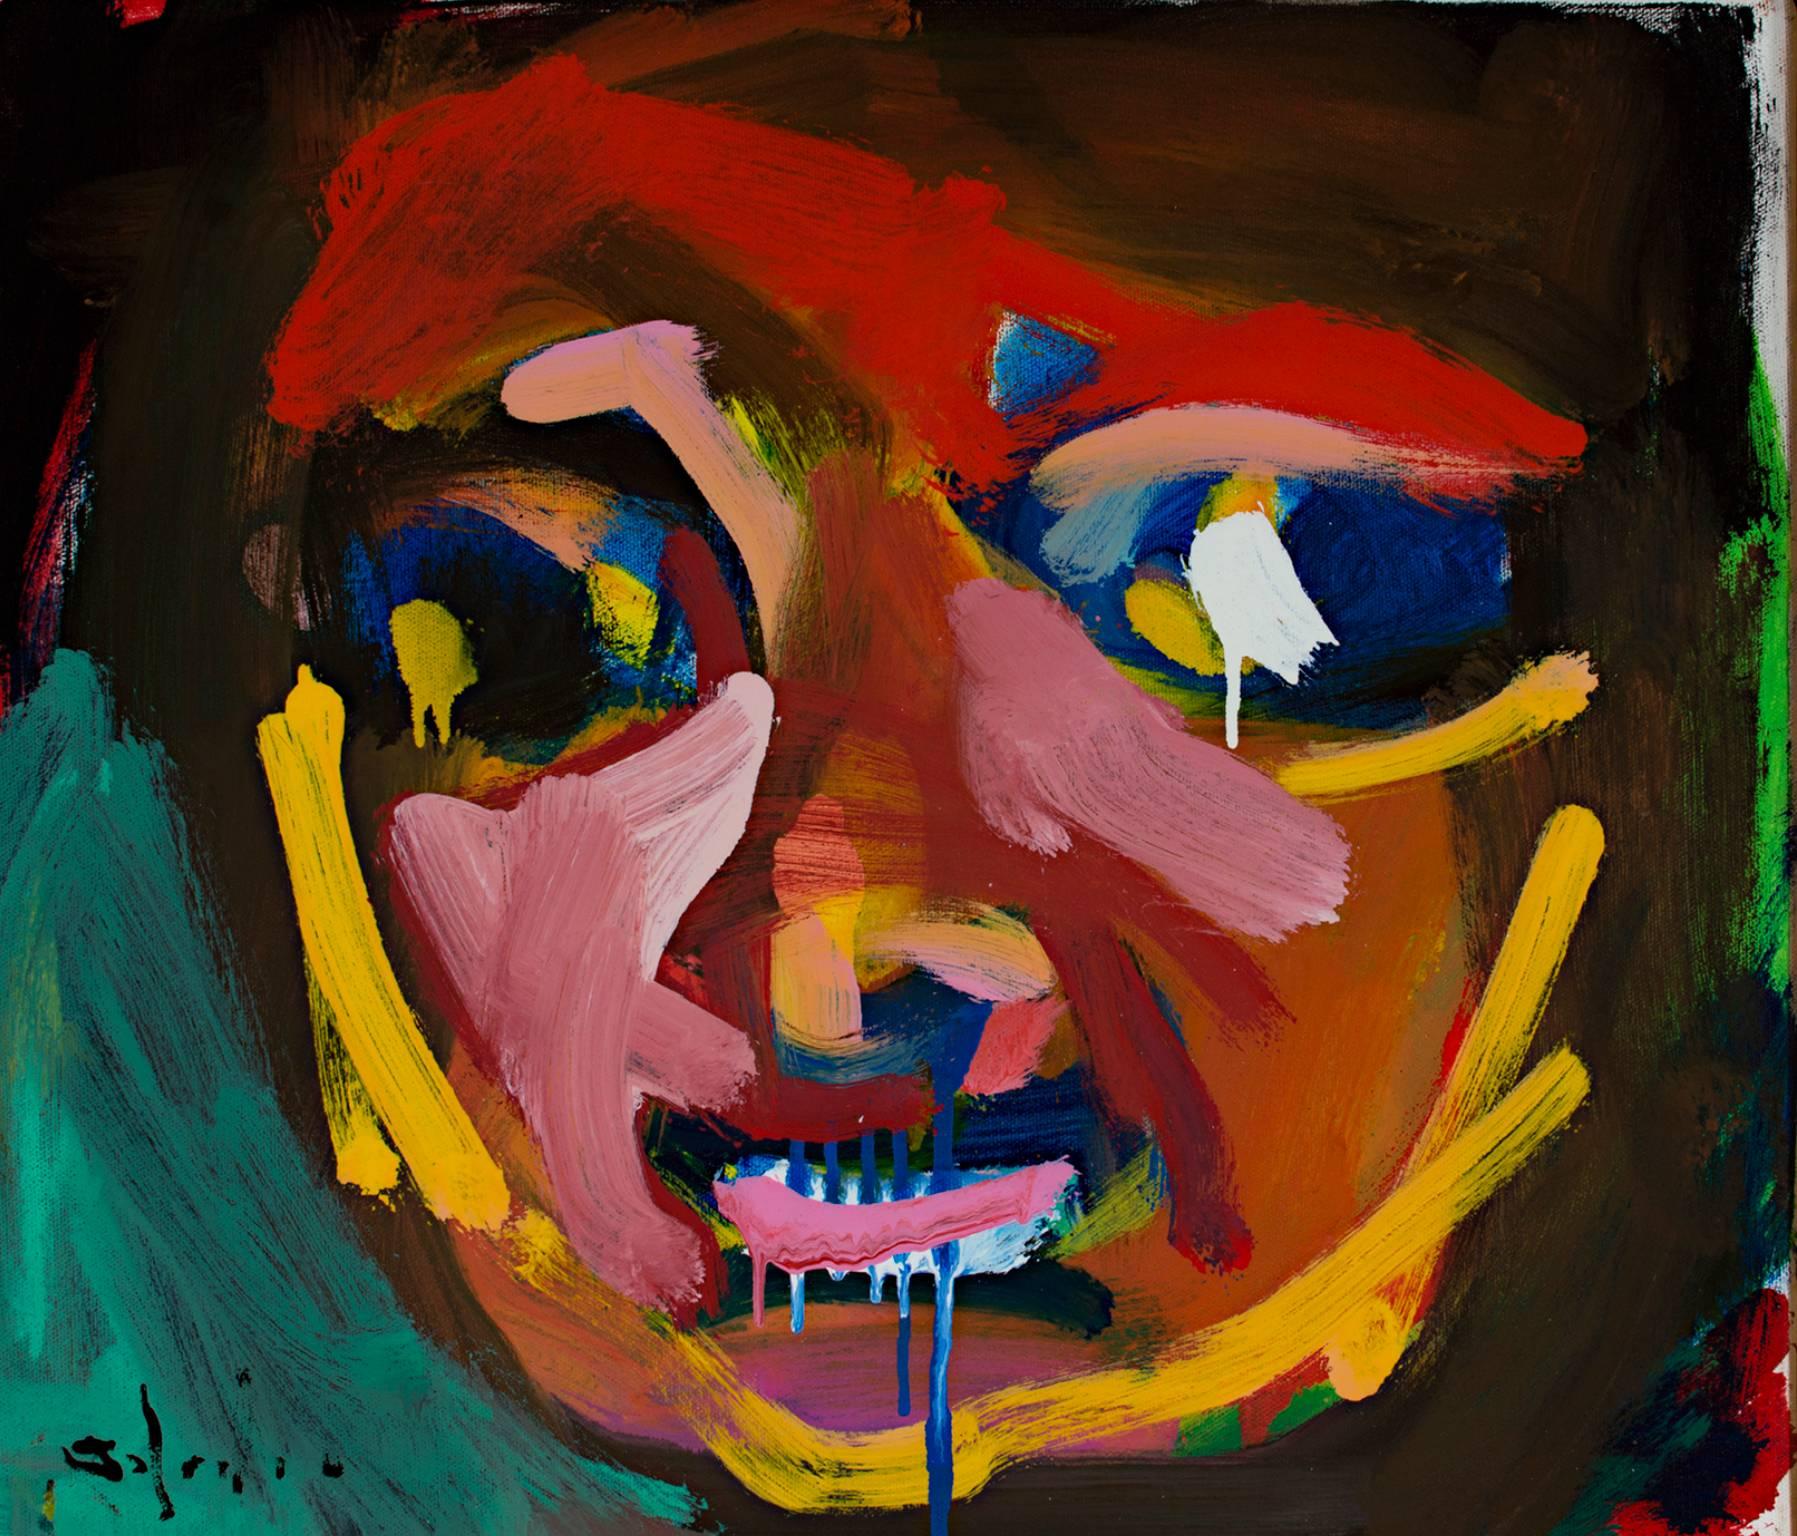 "Puck" est un portrait original peint à l'huile sur toile par Matthew Schaefer. La figure abstraite est une conception unique et colorée dont le prix est inférieur à 3 000 dollars. Grâce à ses dimensions, il convient parfaitement à la plupart des